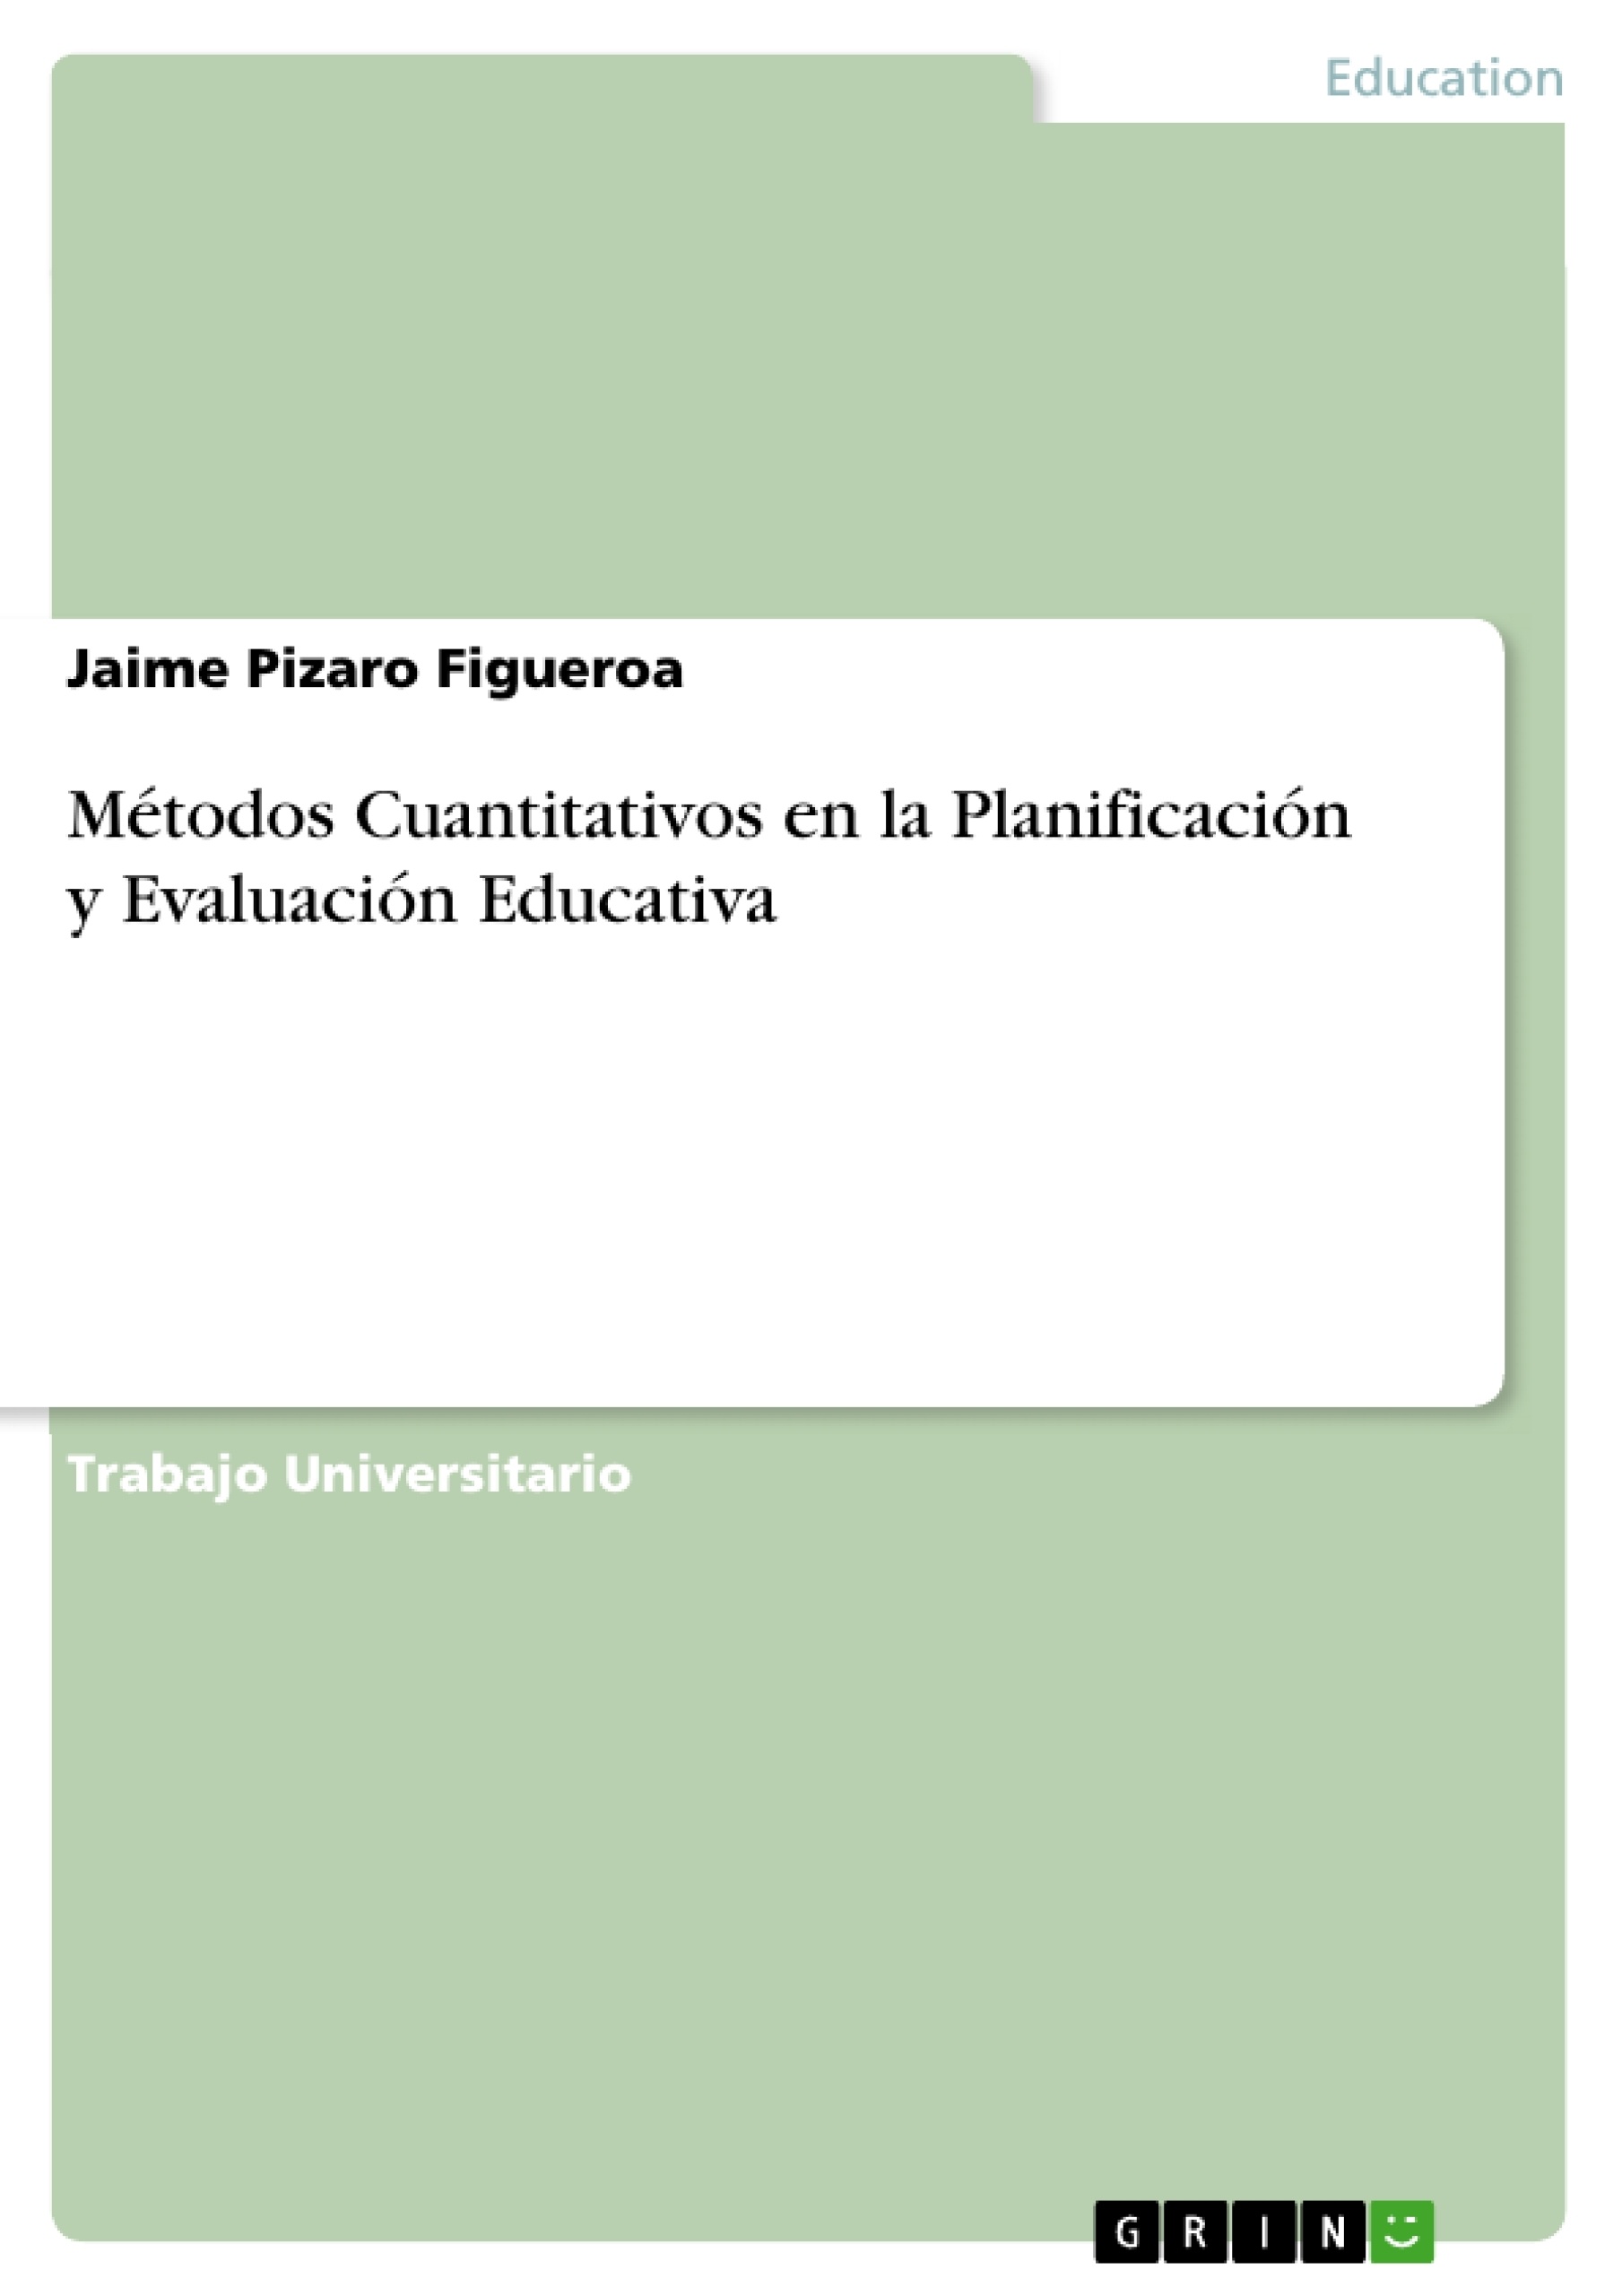 Title: Métodos Cuantitativos en la Planificación y Evaluación Educativa